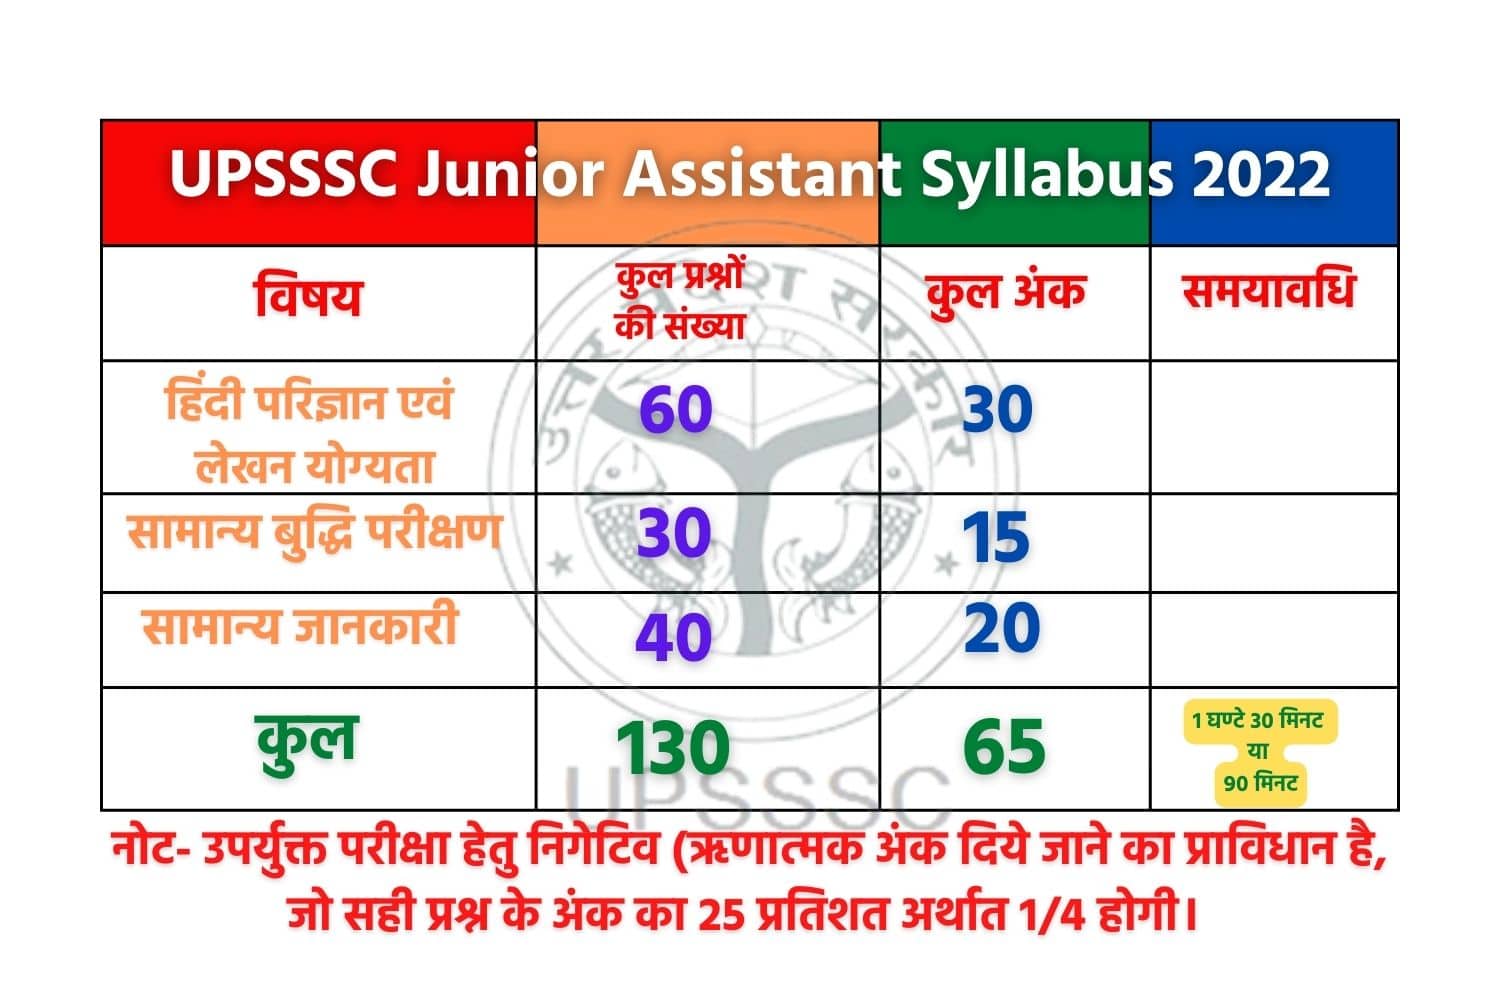 UPSSSC Junior Assistant Syllabus 2023 In Hindi | हिंदी में जानें UPSSSC जूनियर असिस्टेंट का सिलेबस